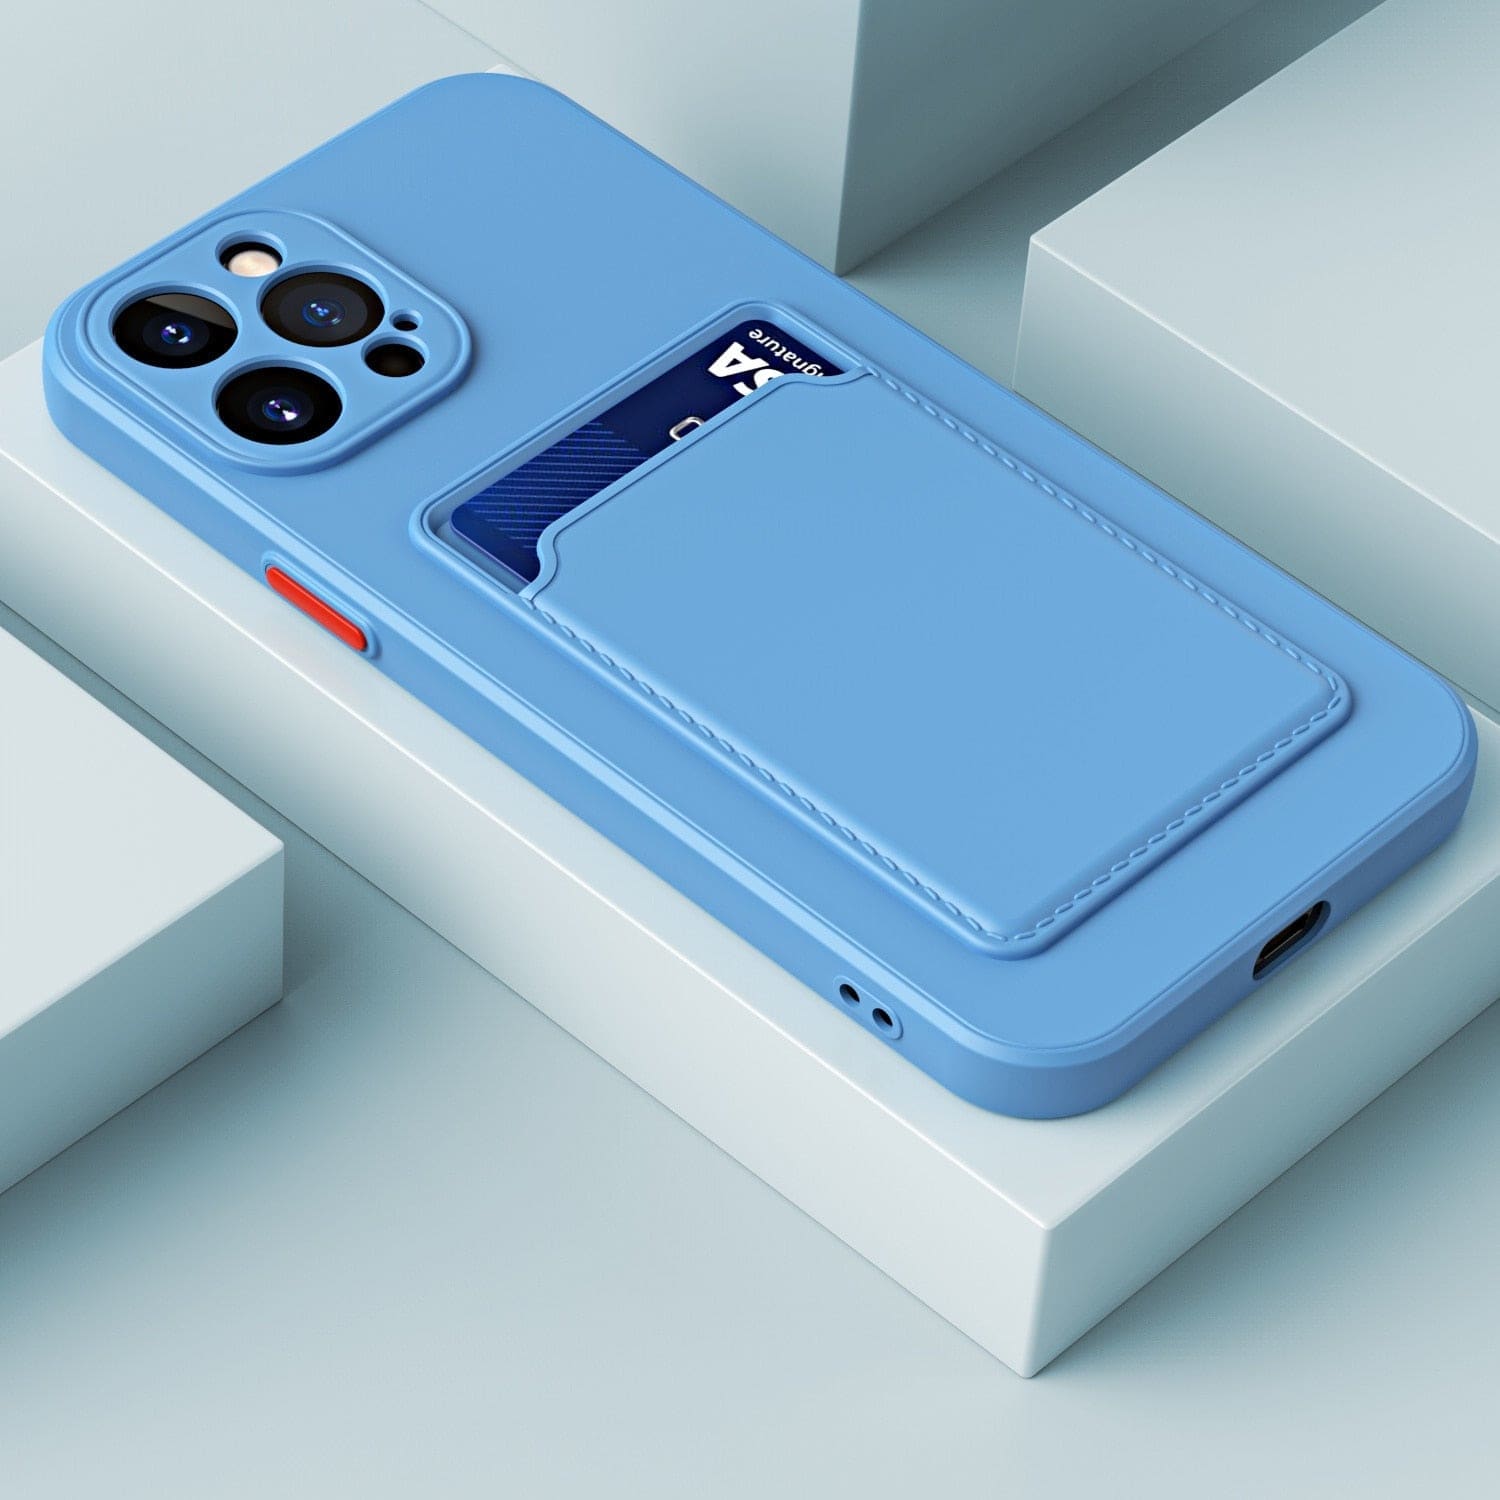 Silikon iPhone Schutzhülle mit Kartenhalter - Hellblau / iPhone 12 mini - iPhone Schutzhülle